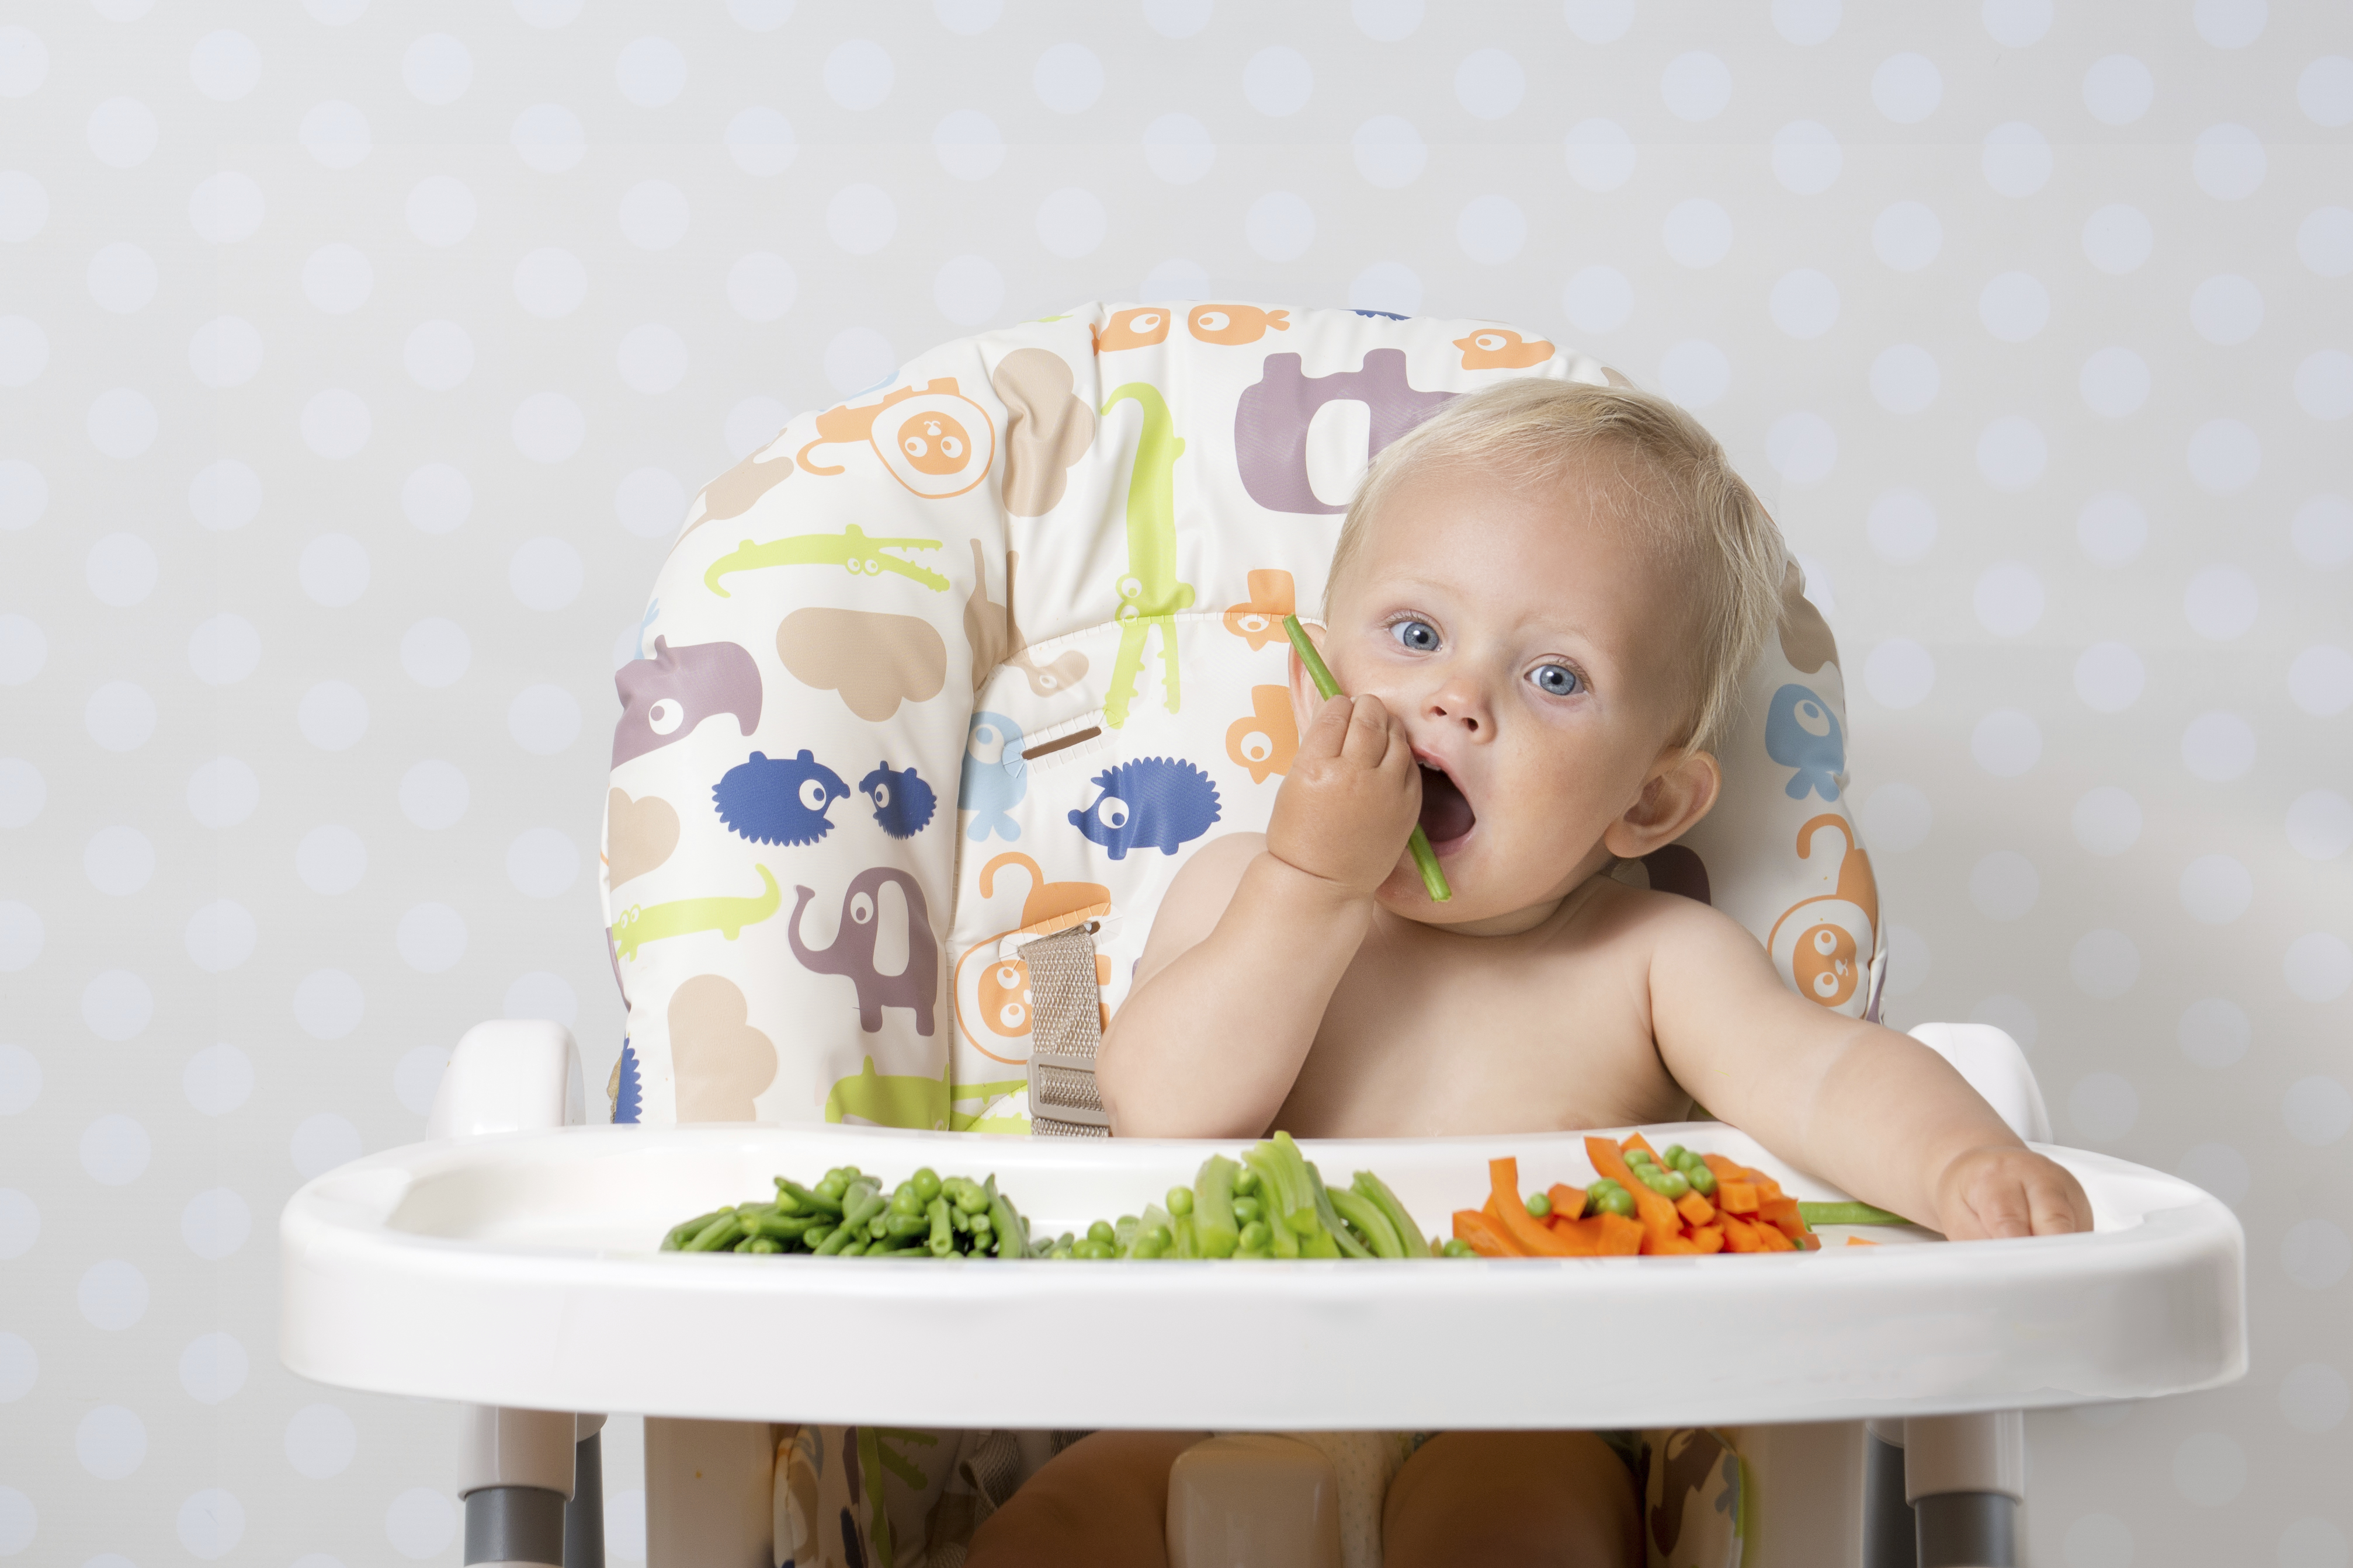 Alimentación complementaria y baby led weaning